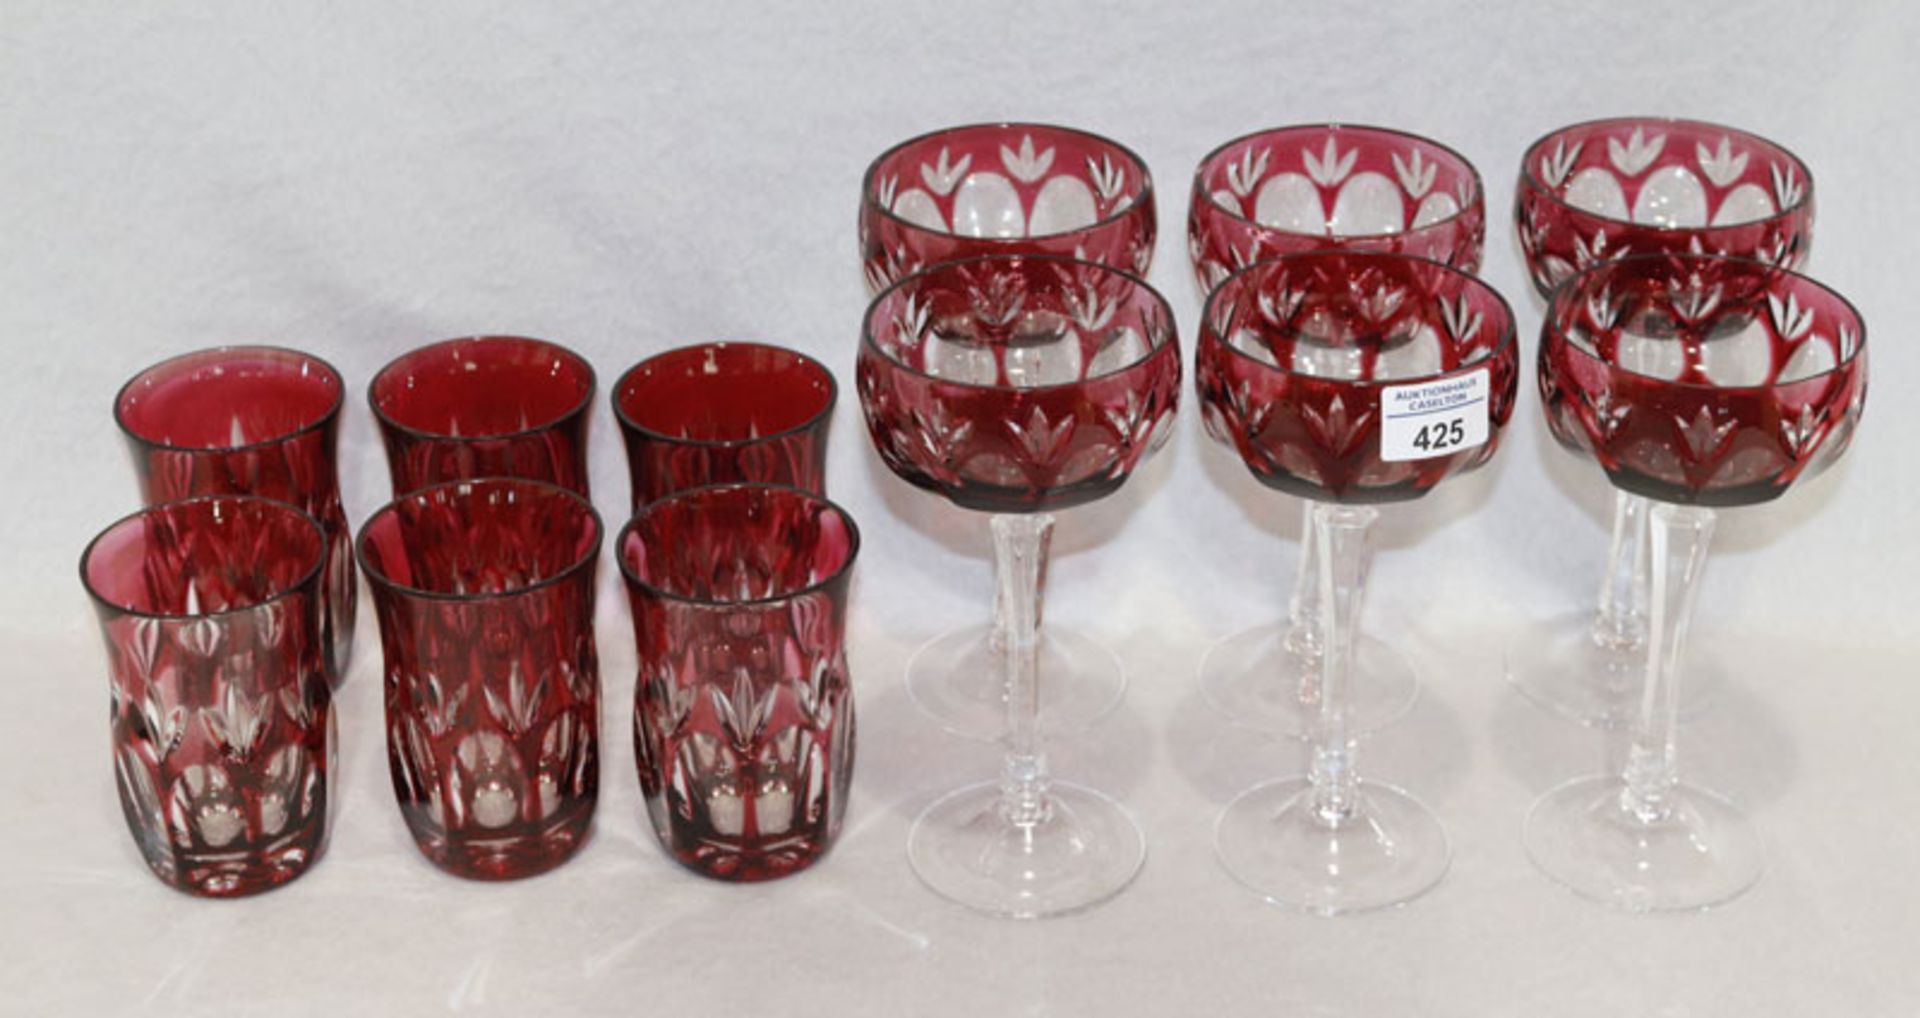 6 rote WMF Überfang Glasbecher, H 12 cm, D 8 cm, und 6 Sektschalen, H 20 cm, D 10 cm, alle mit